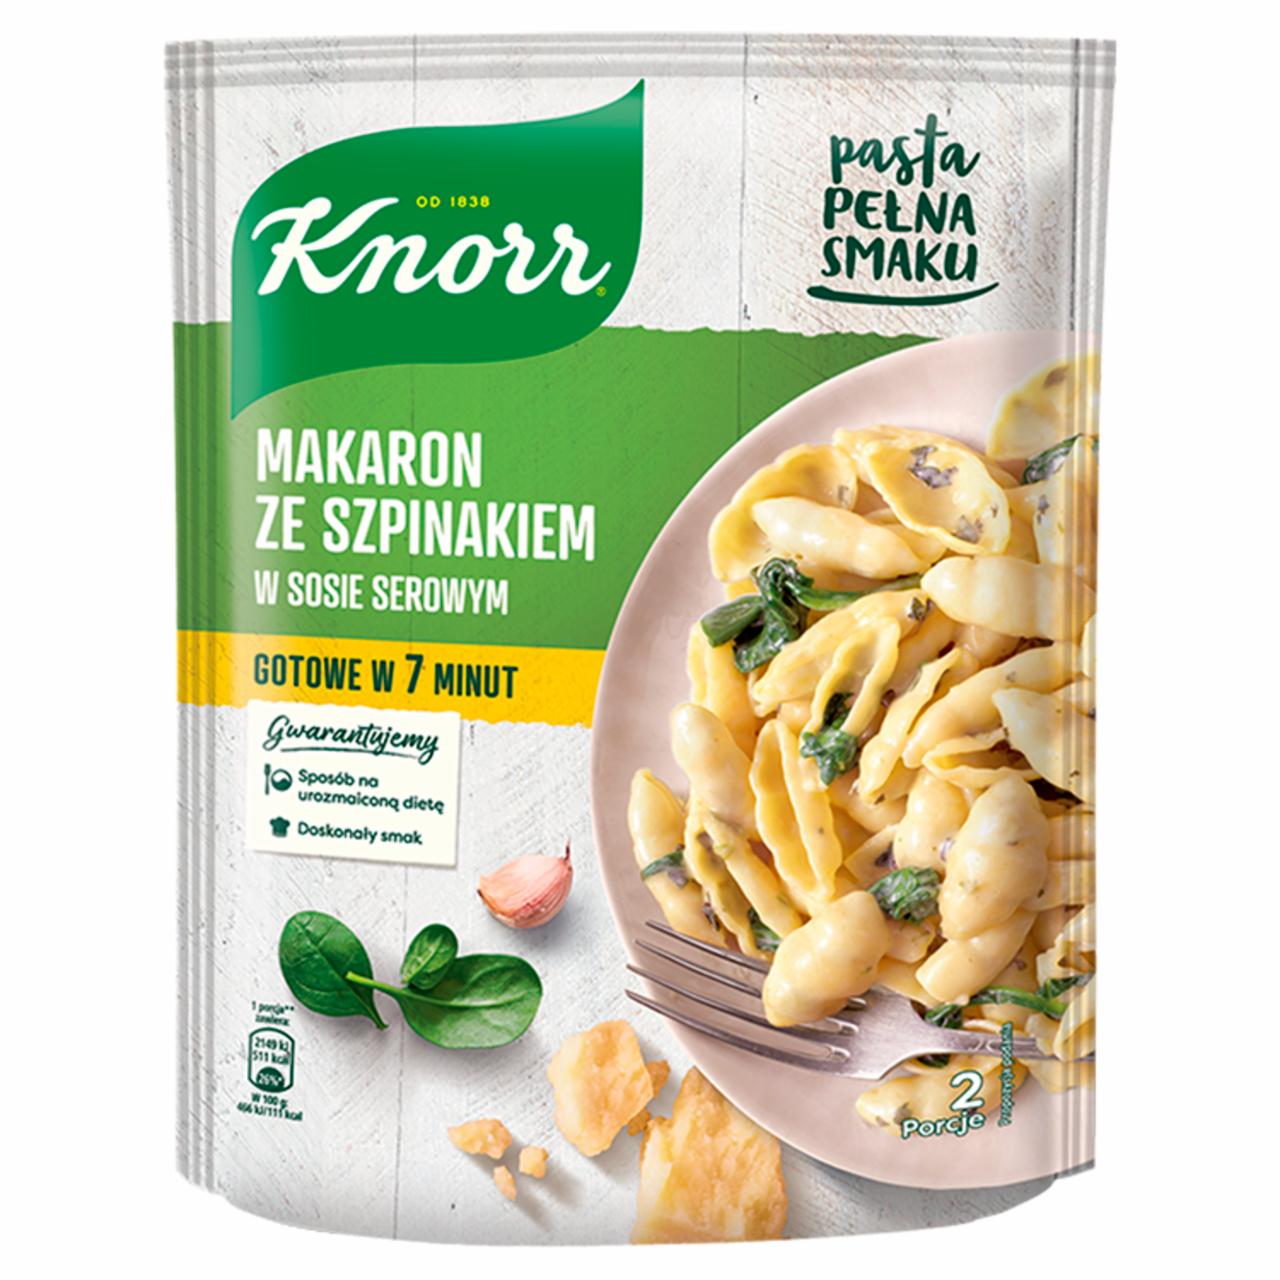 Zdjęcia - Knorr Makaron ze szpinakiem w sosie serowym 160 g